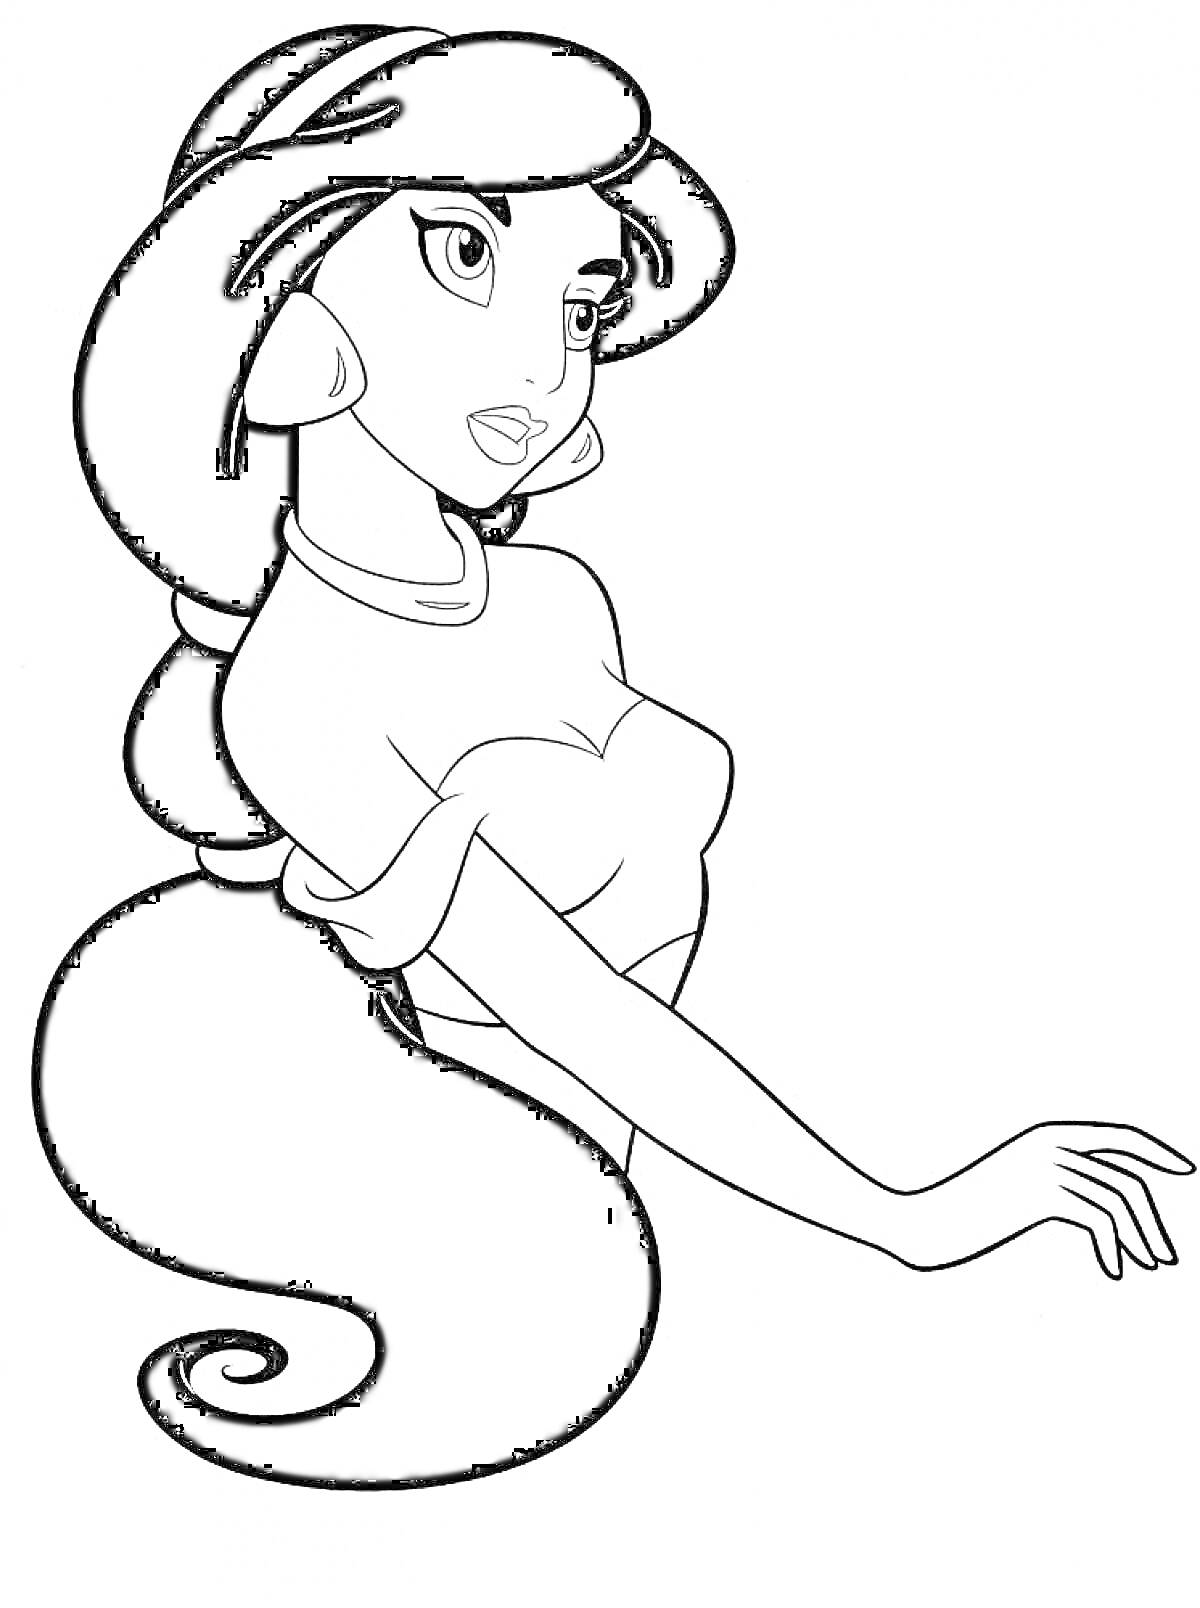 Принцесса Жасмин с длинными волосами, стоящая в профиль, с серьгами и ожерельем